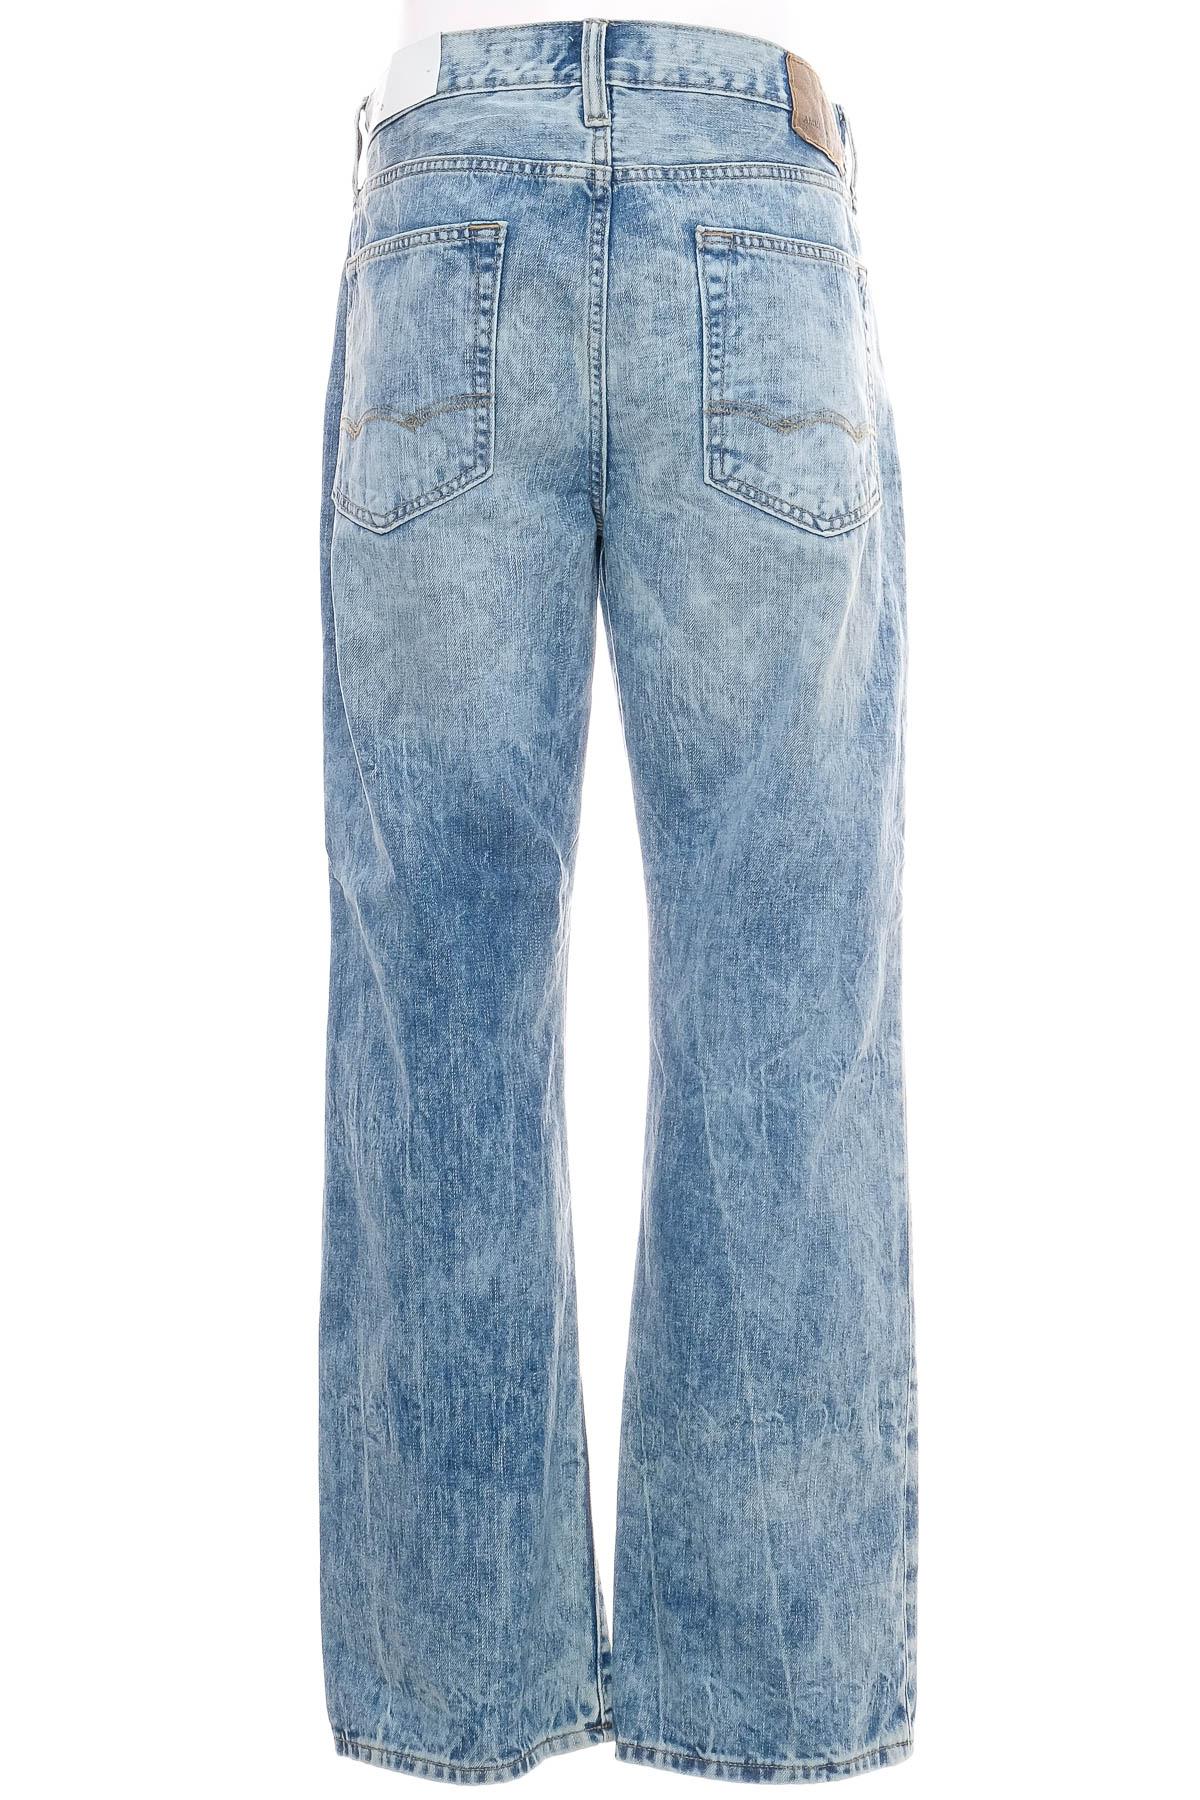 Jeans pentru bărbăți - American Eagle - 1